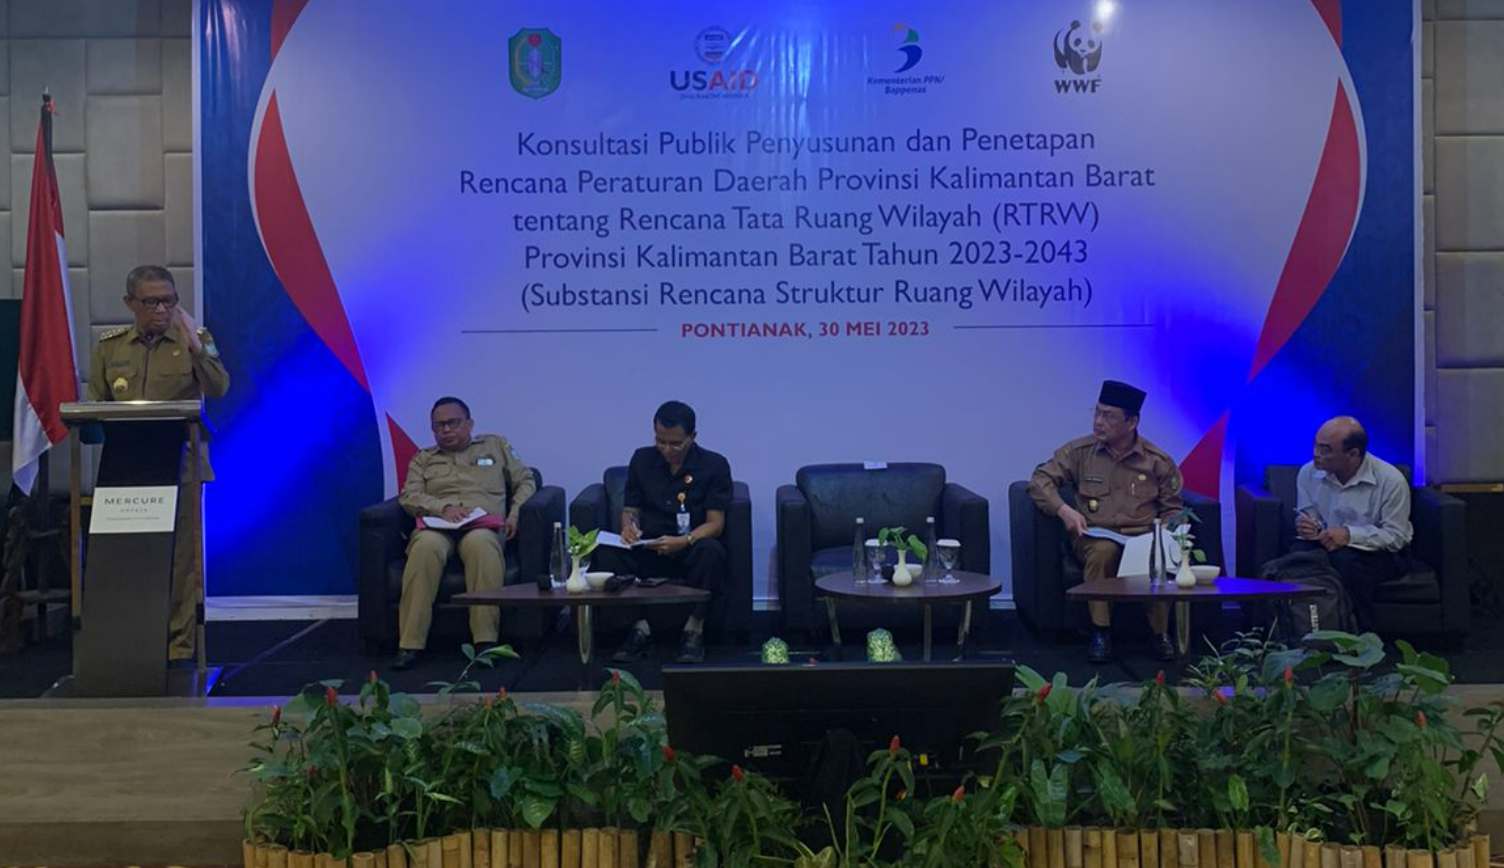 Kementerian Hukum dan HAM Kalimantan Barat Ikut Serta dalam Kegiatan Konsultasi Publik Rancangan RTRW 2023-2043